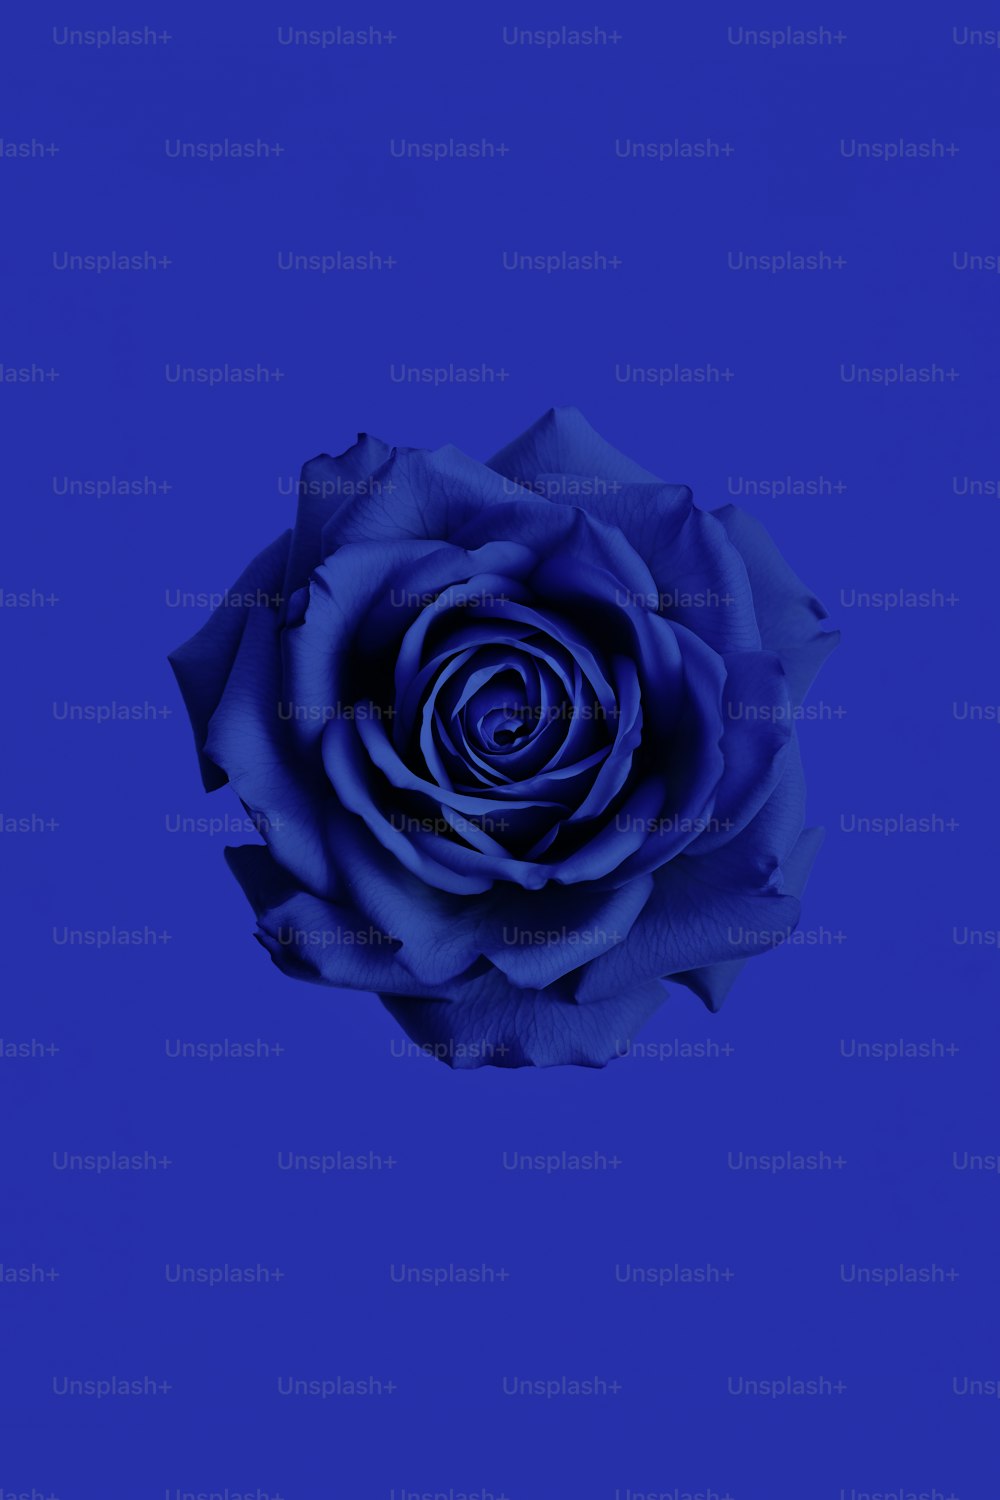 Eine blaue Rose wird vor blauem Hintergrund dargestellt